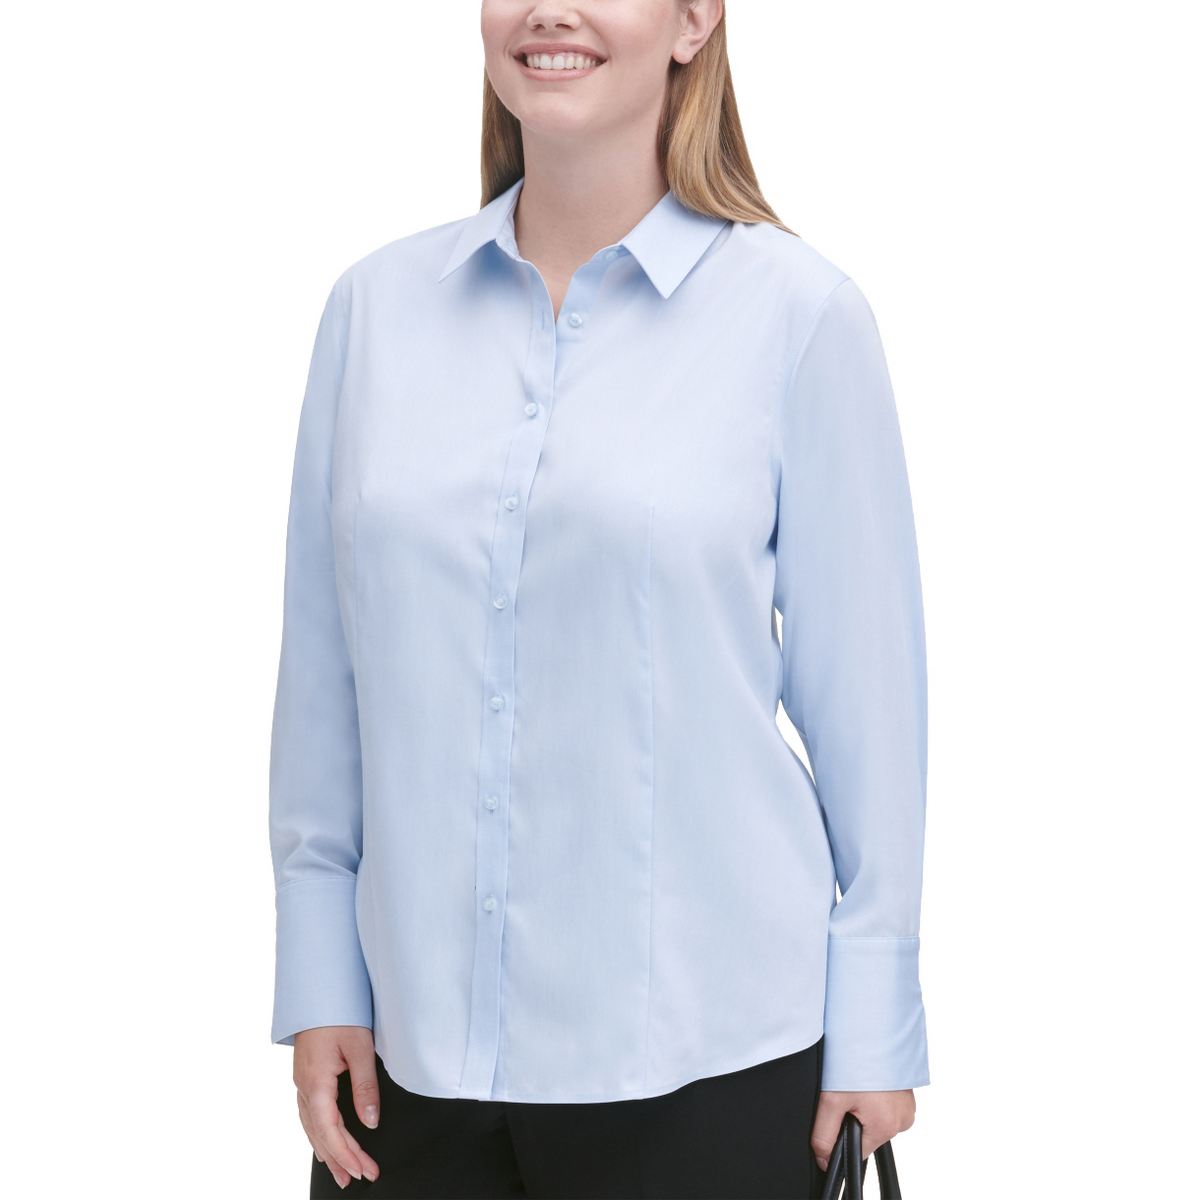 Non-iron Button Down Shirt Top TEDO | eBay